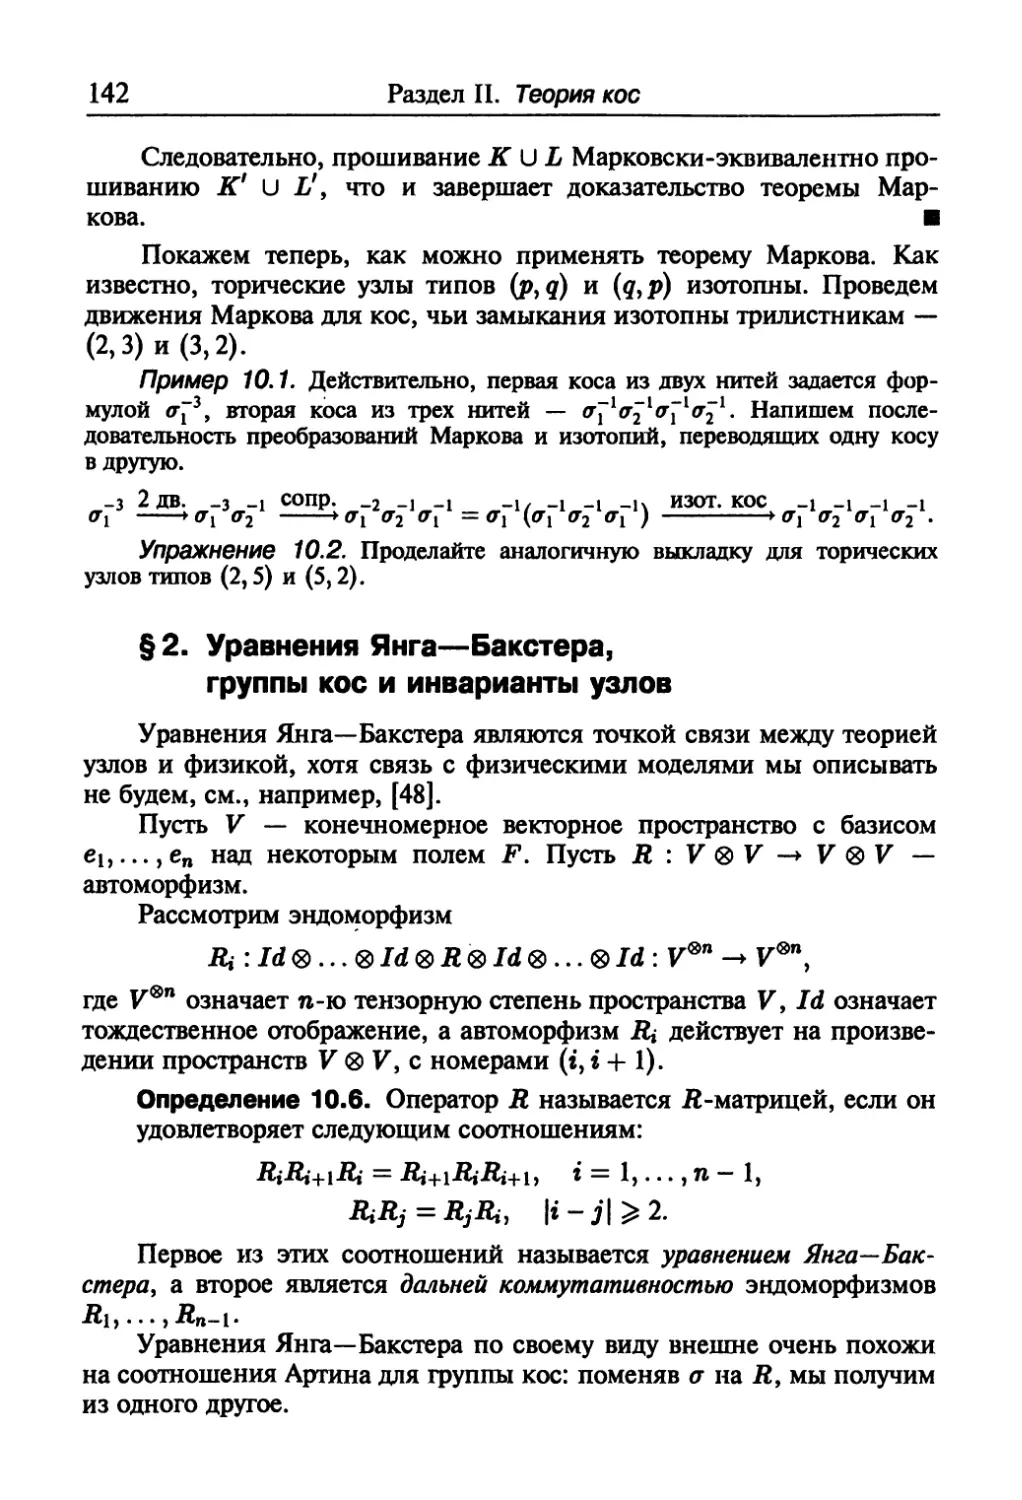 § 2. Уравнения Янга—Бакстера, группы кос и инварианты узлов